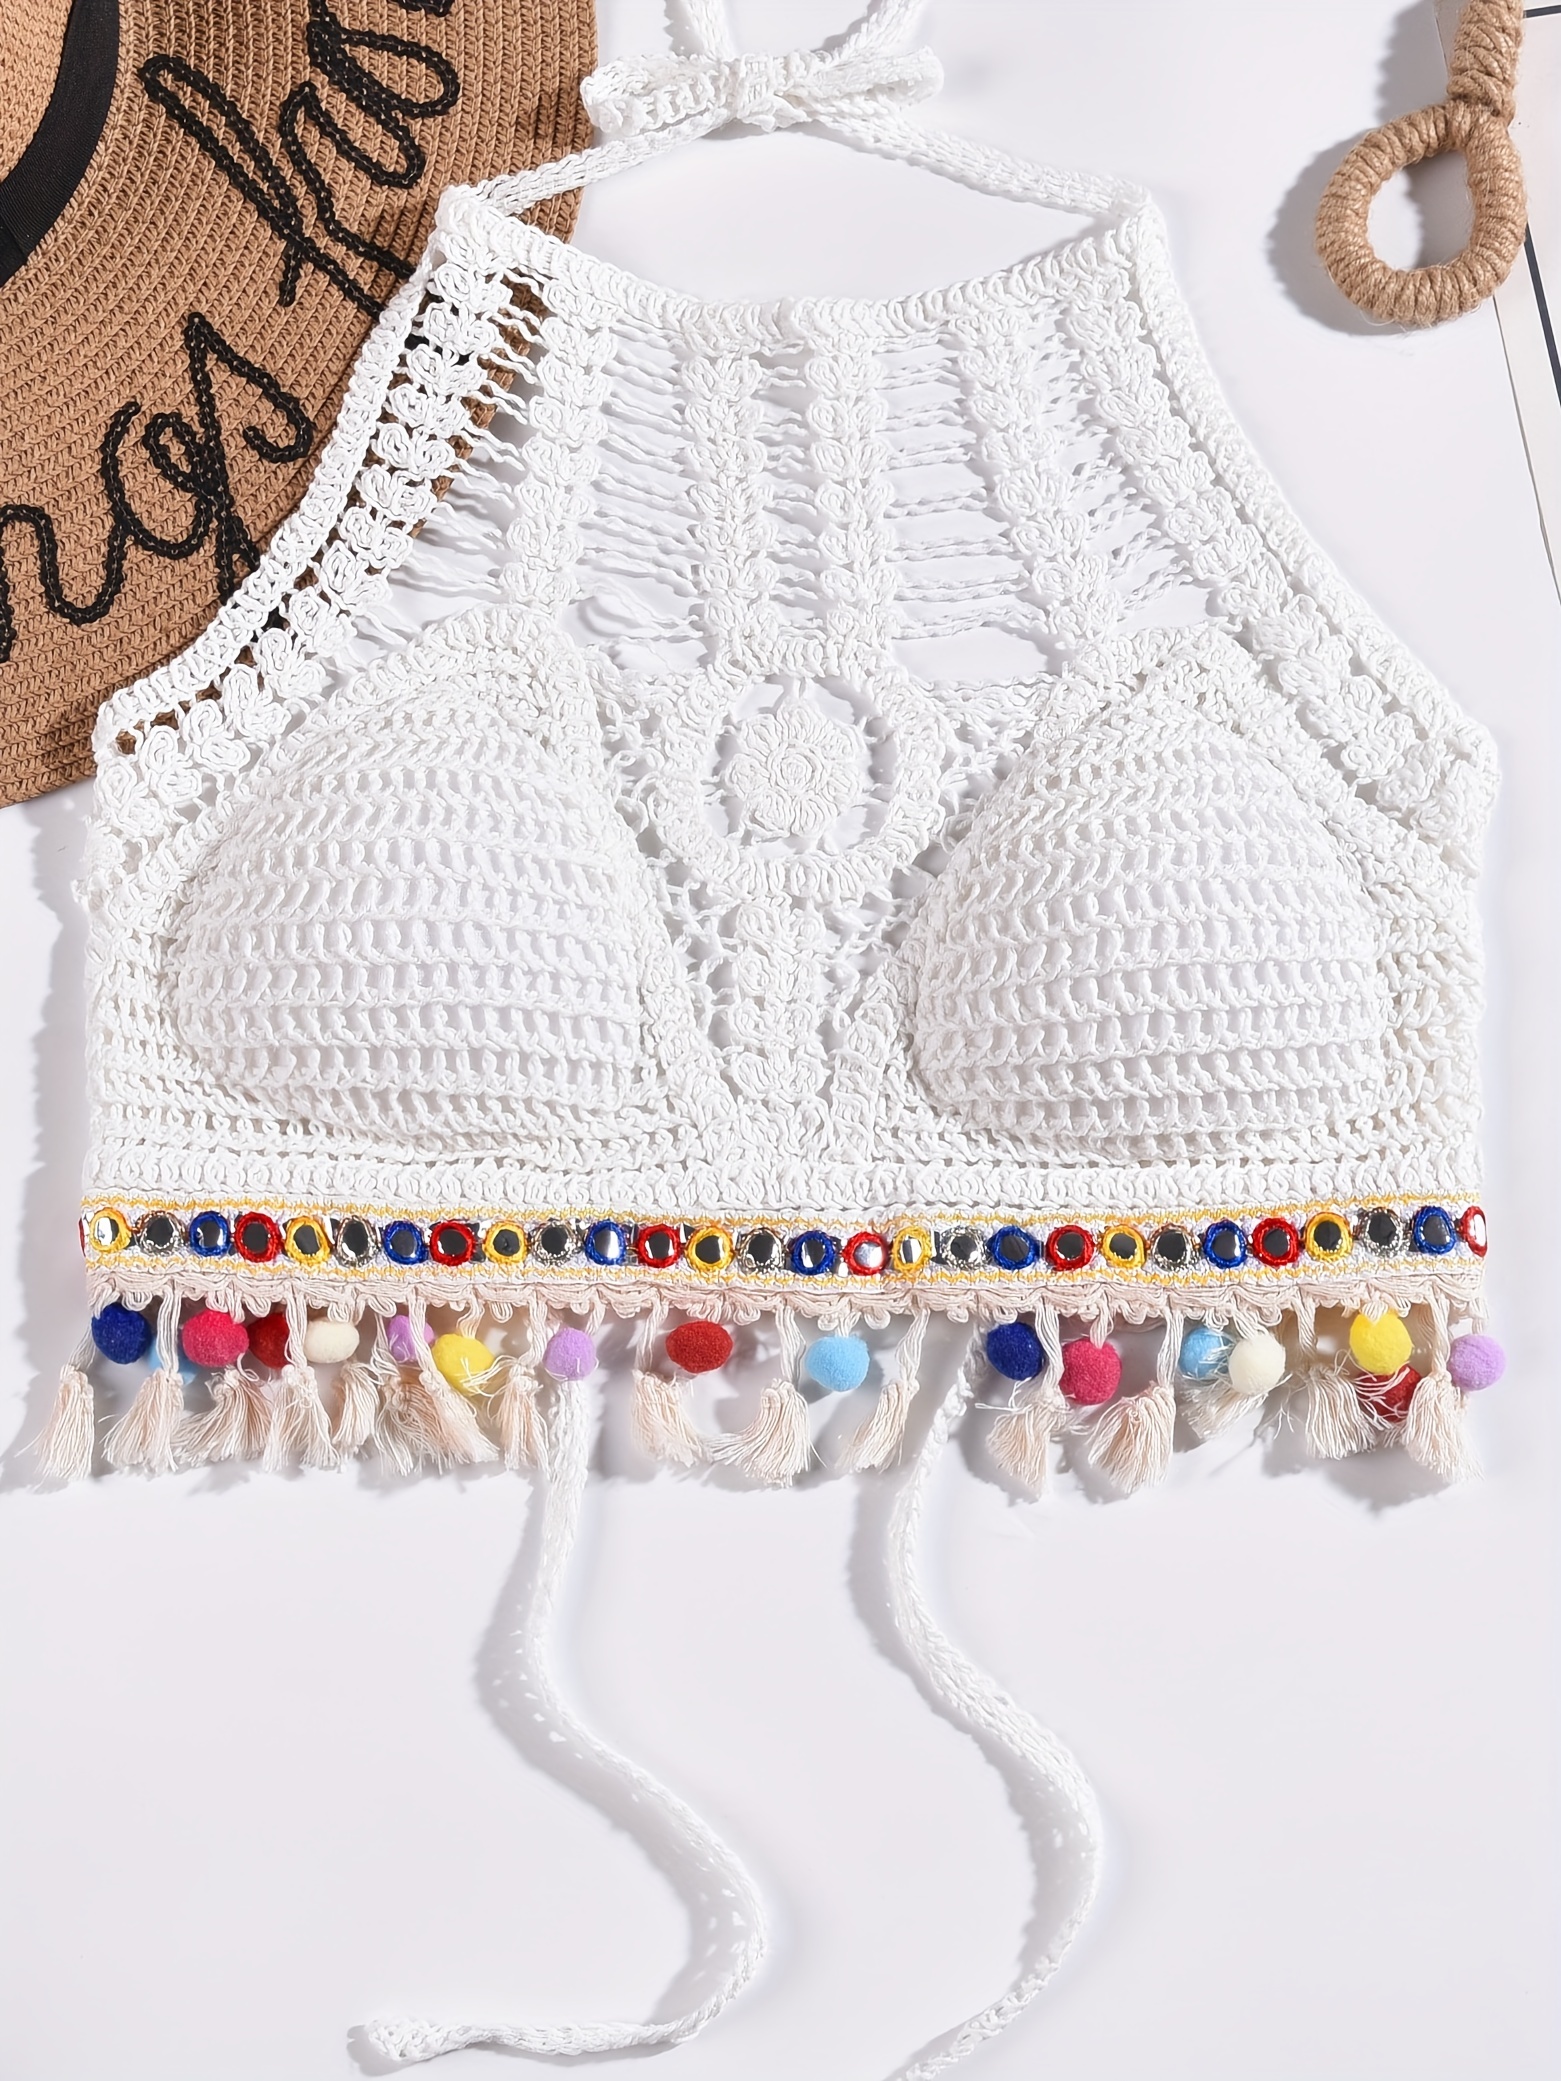 Carnival crochet top: Crochet pattern